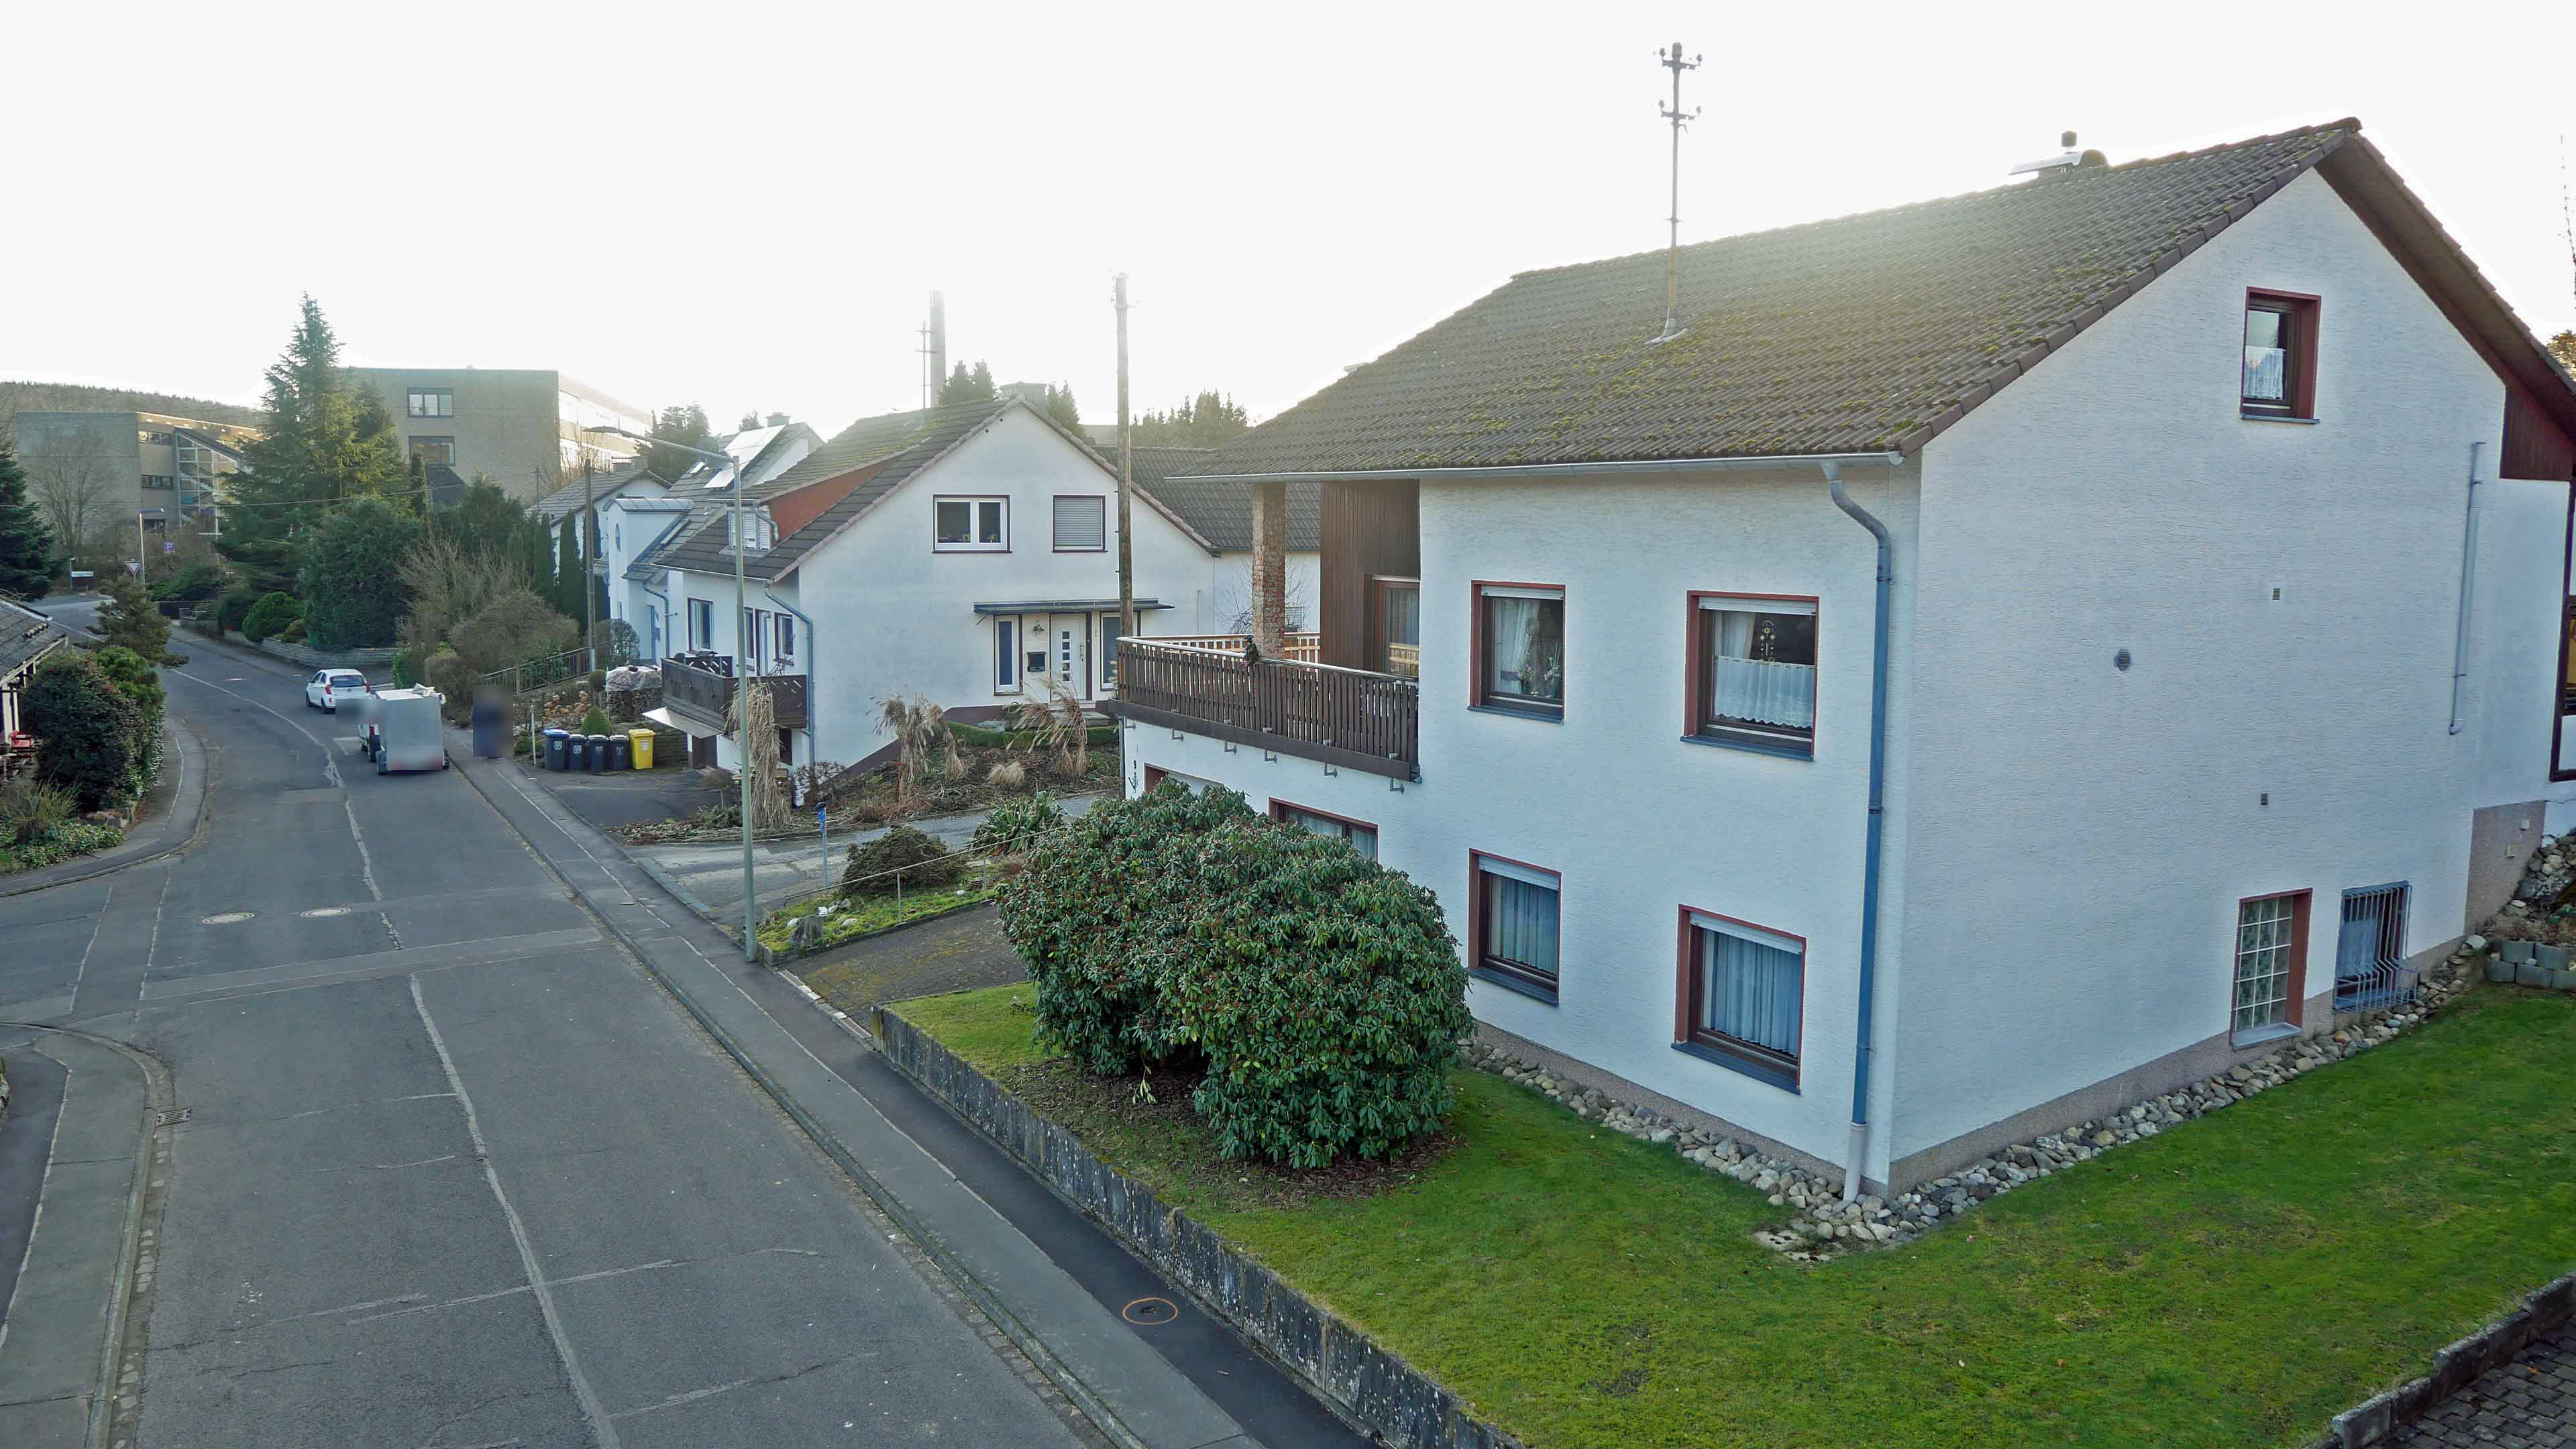 Freudenberg-Büschergrund: EFH mit Terrasse, Garten und Garage, 153 m² Wfl im EG/UG   22 m² im DG